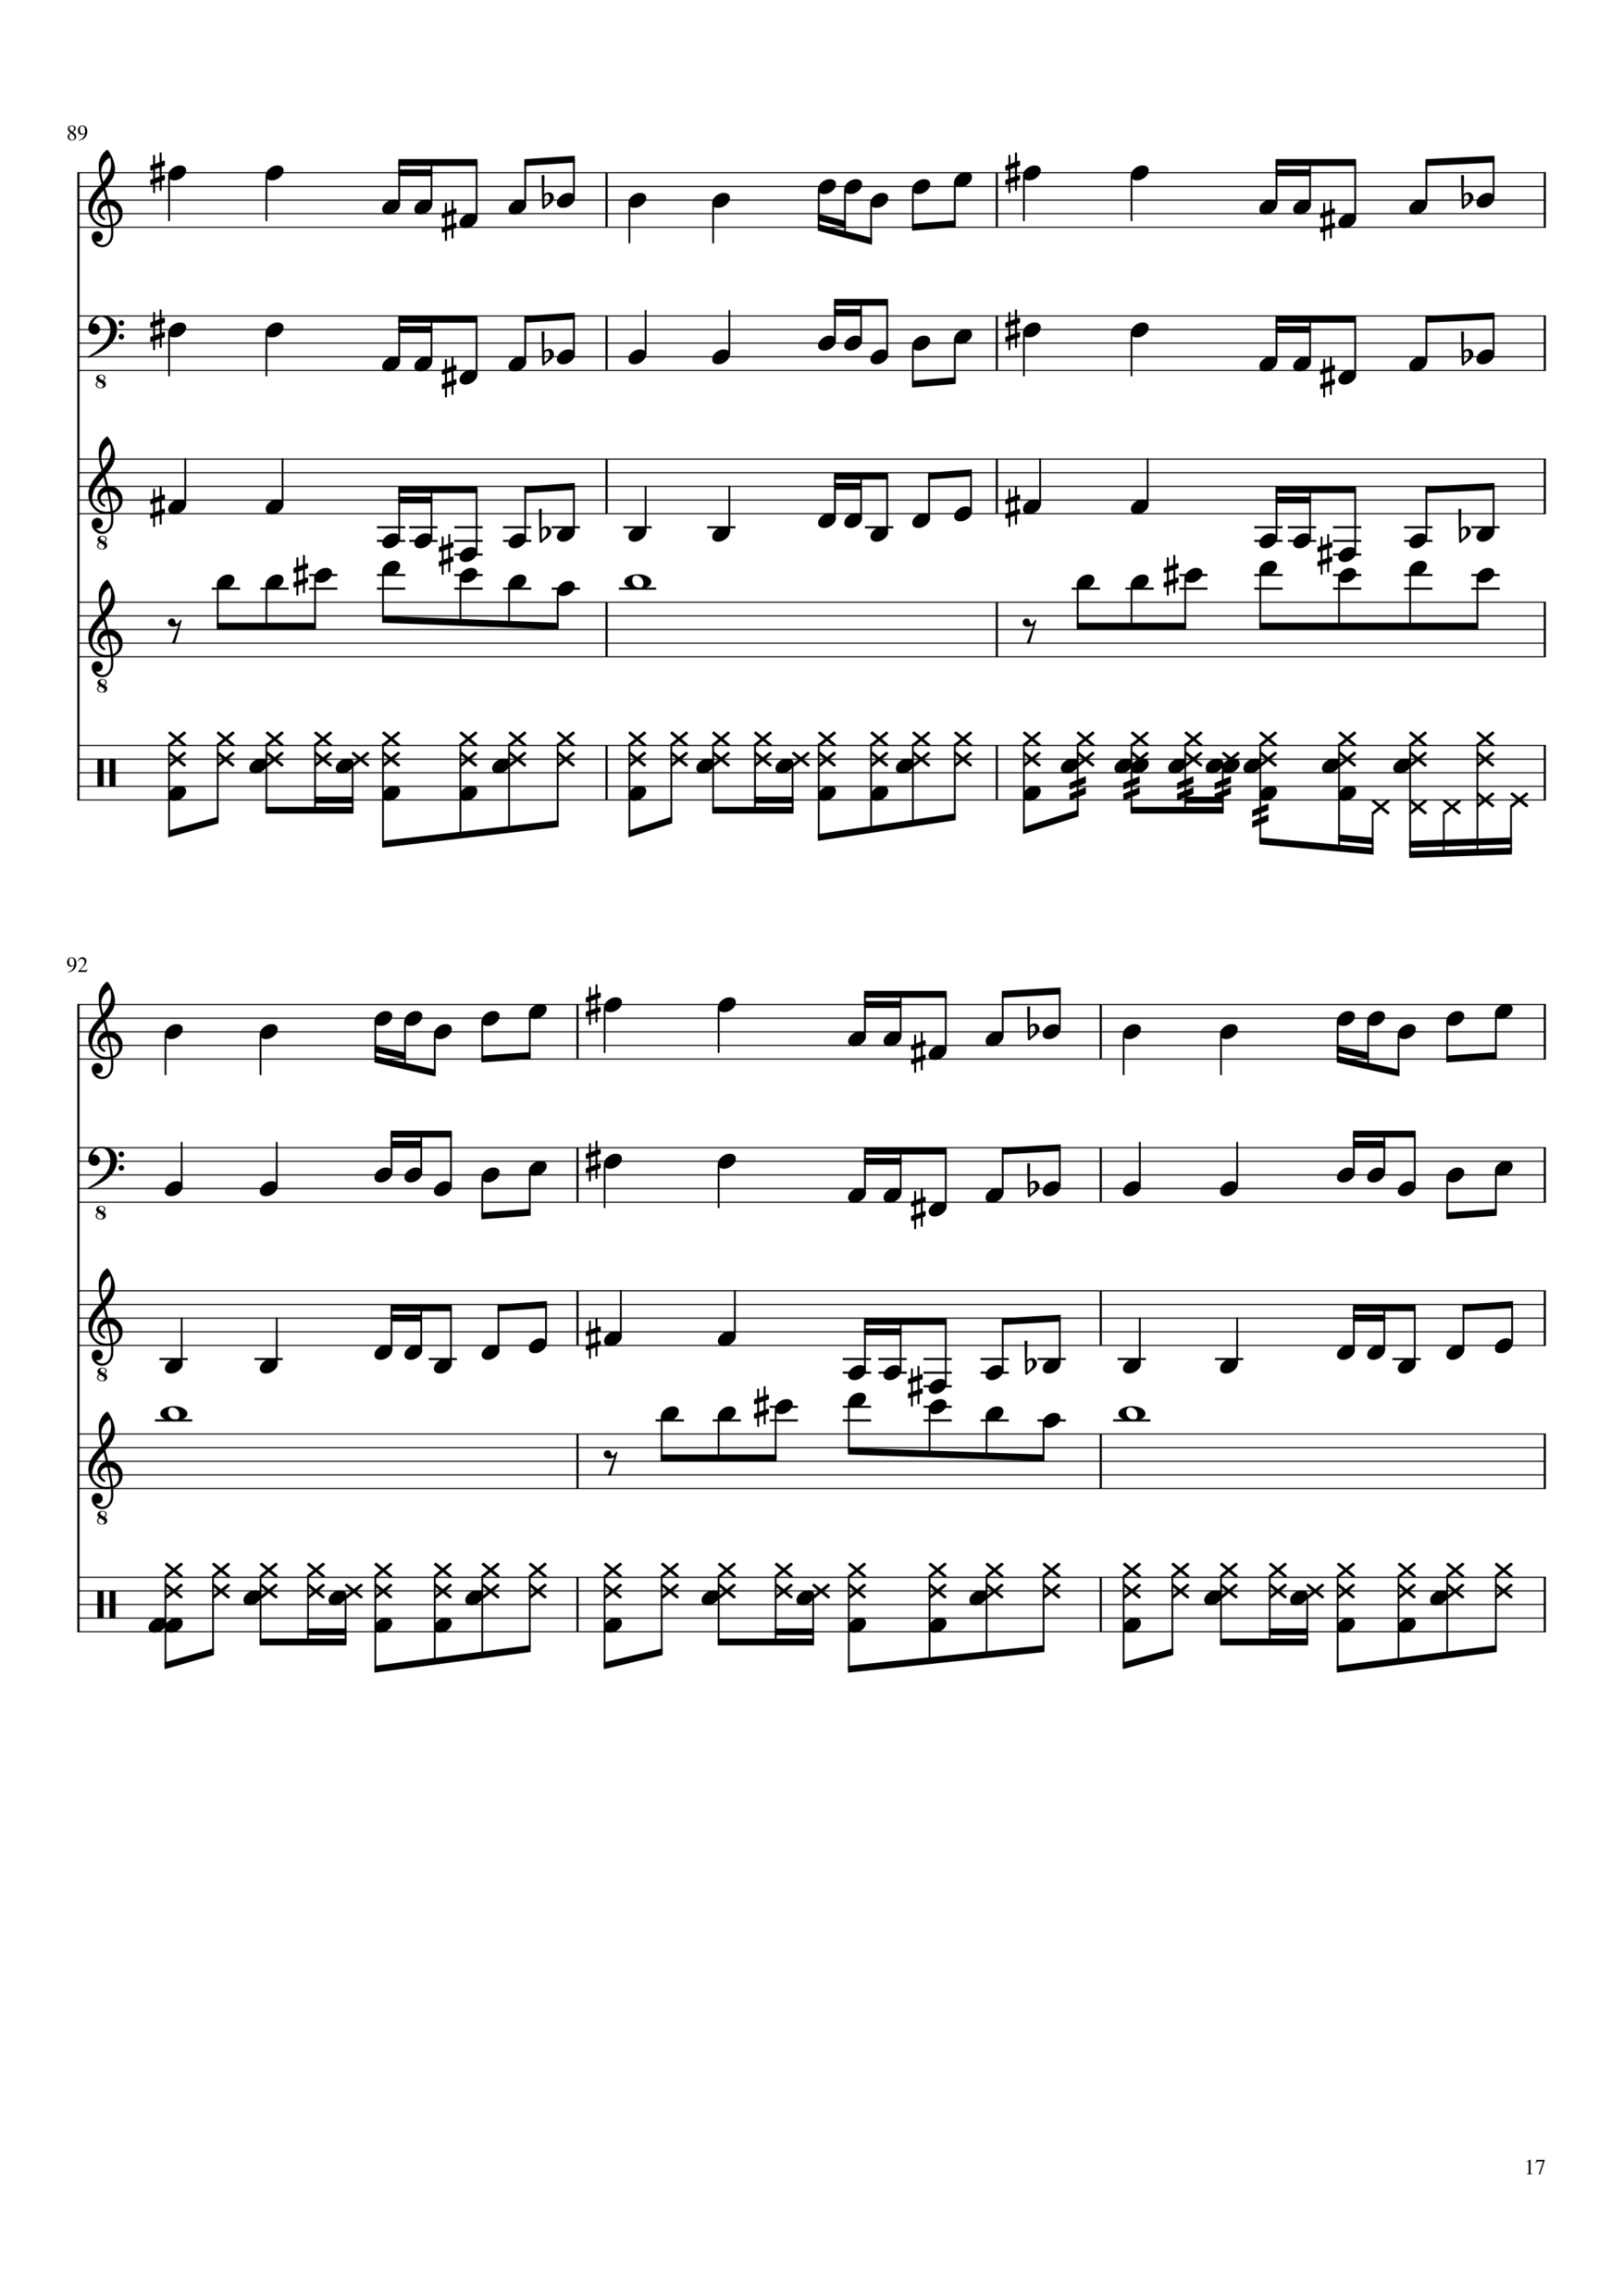 Vechnaya lyubov slide, Image 17